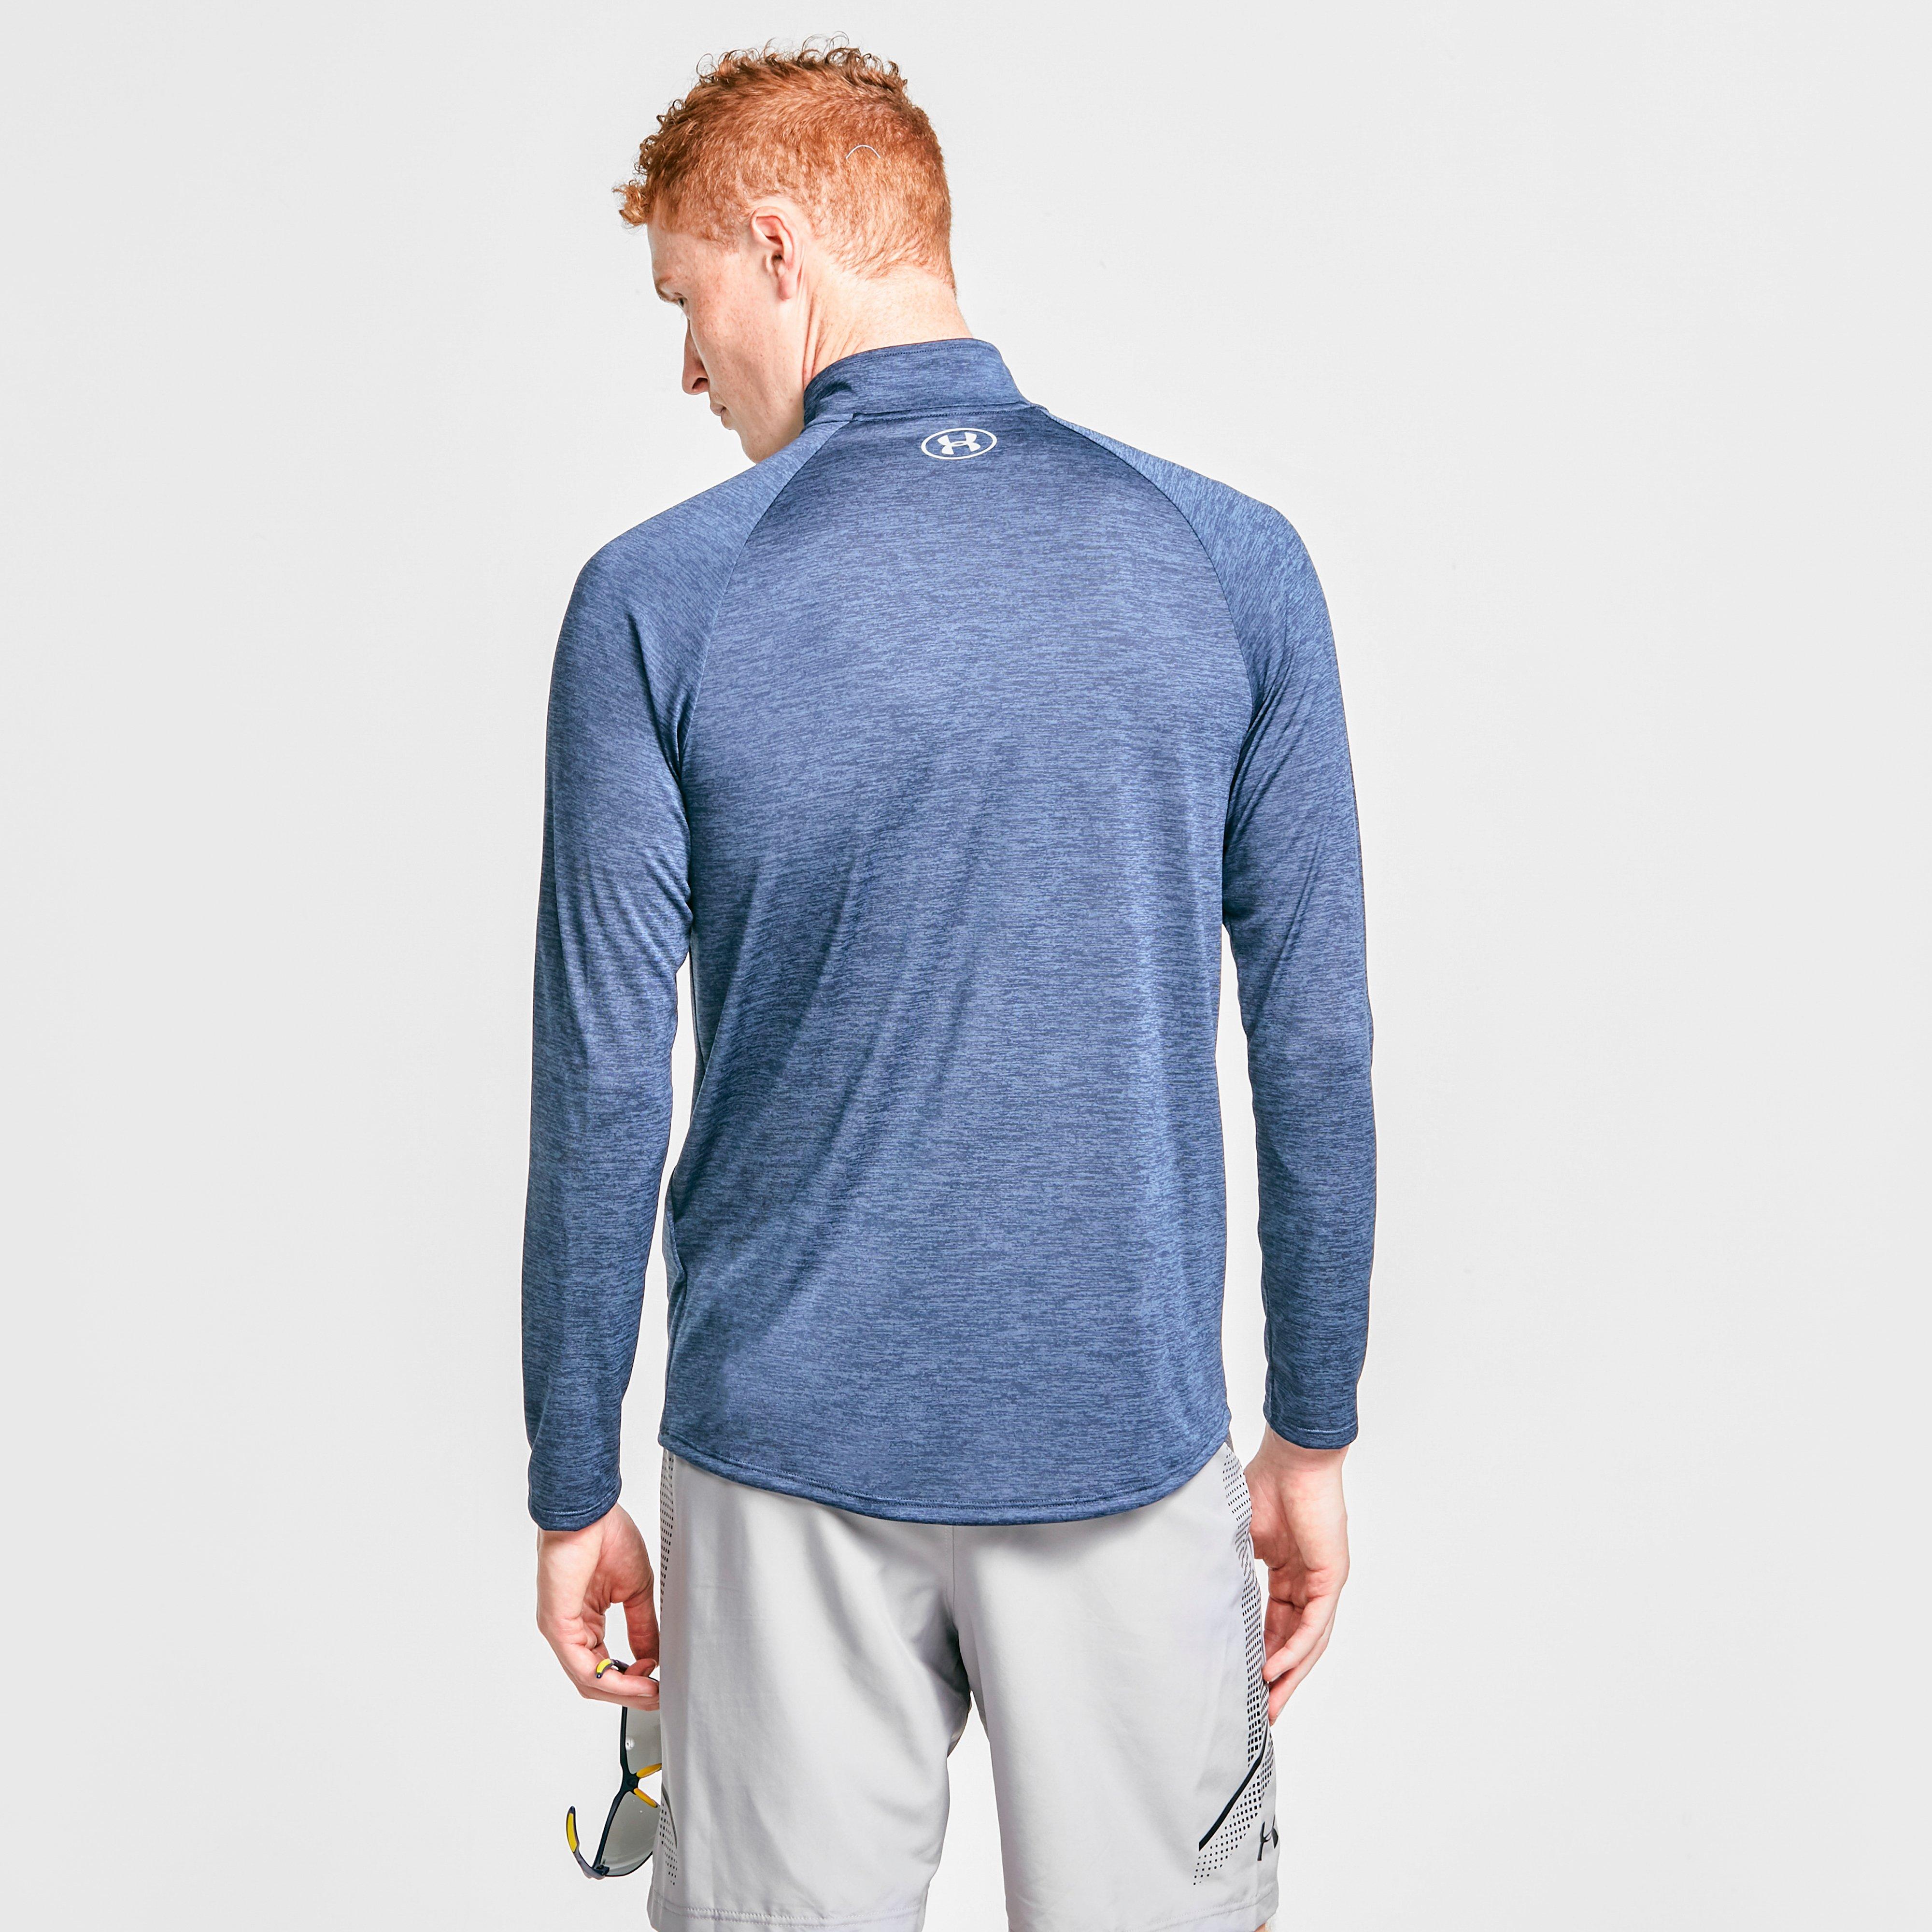 Under Armour Men's UA Tech™ 2.0 Long Sleeve Zip T-Shirt Review